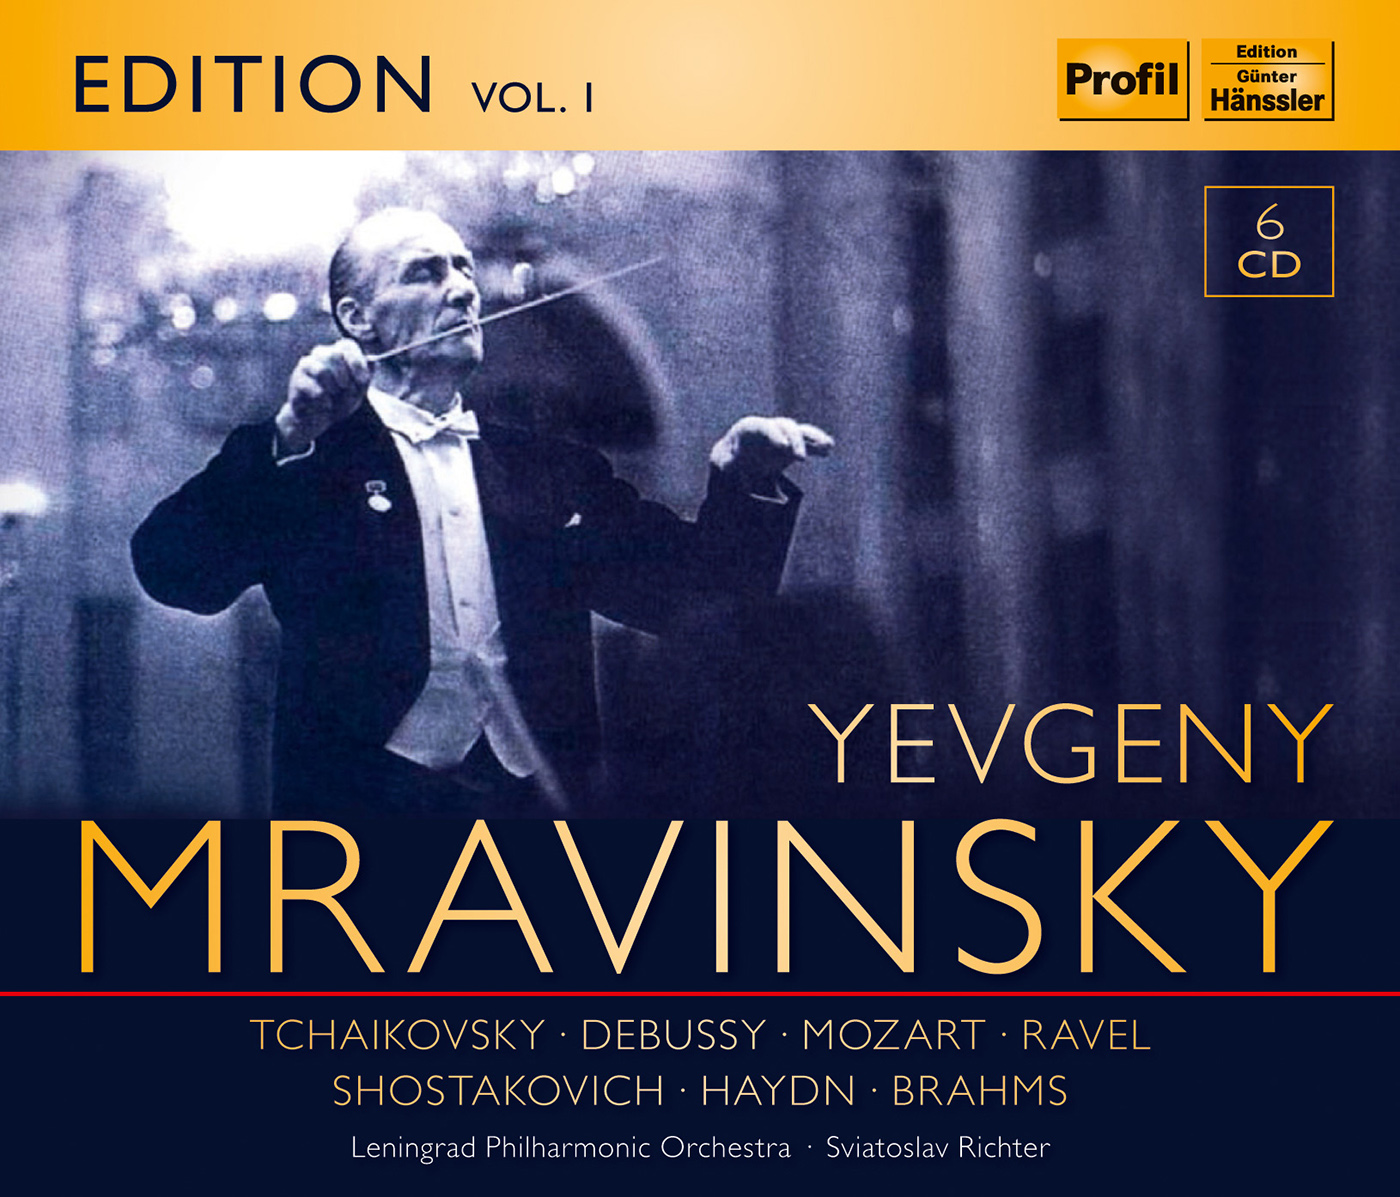 MRAVINSKY, Evgeny: Mravinsky Edition, Vol. 1 (1946-1962)